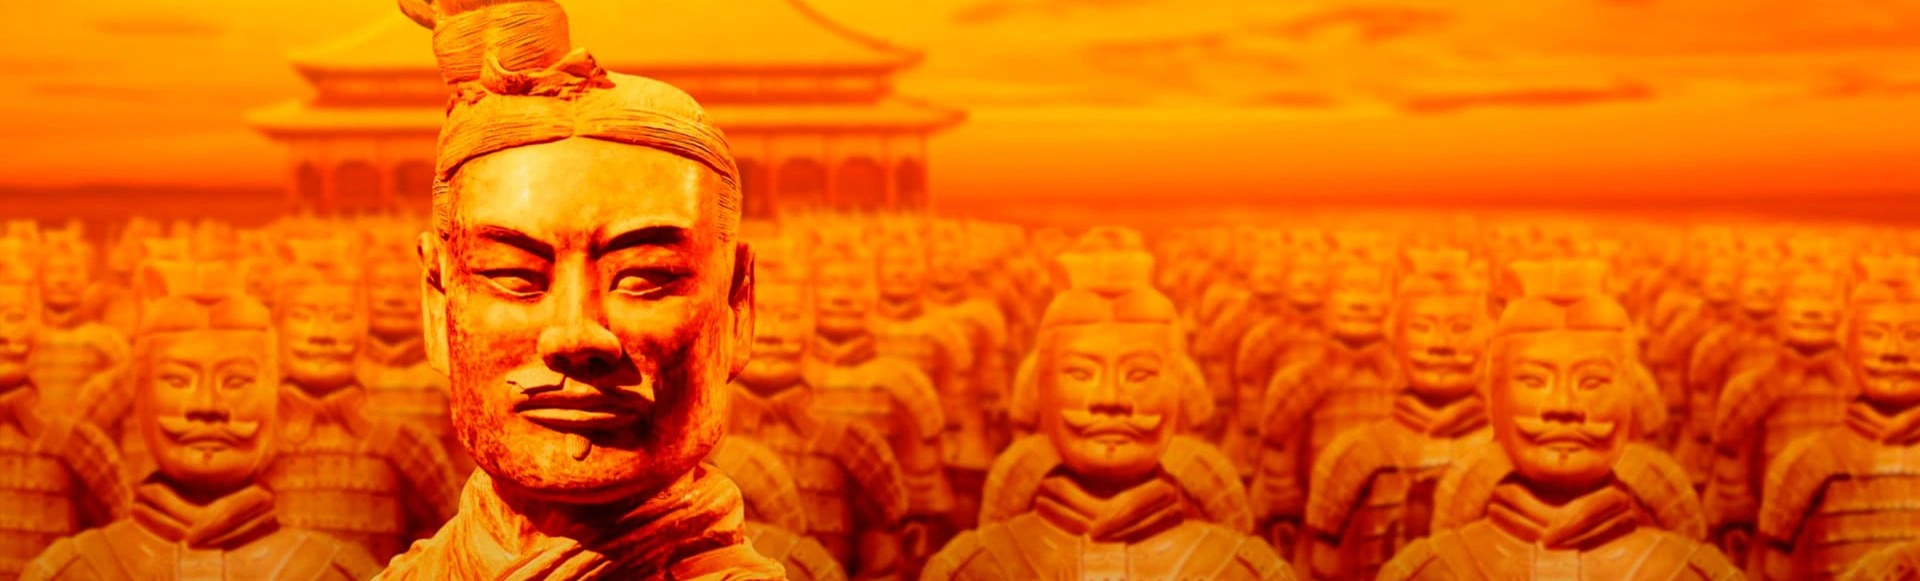 Узнайте тайны древней Китайской армии на выставке-реконструкции «Терракотовая армия. Бессмертные воины Китая» в Зеленом театре ВДНХ!